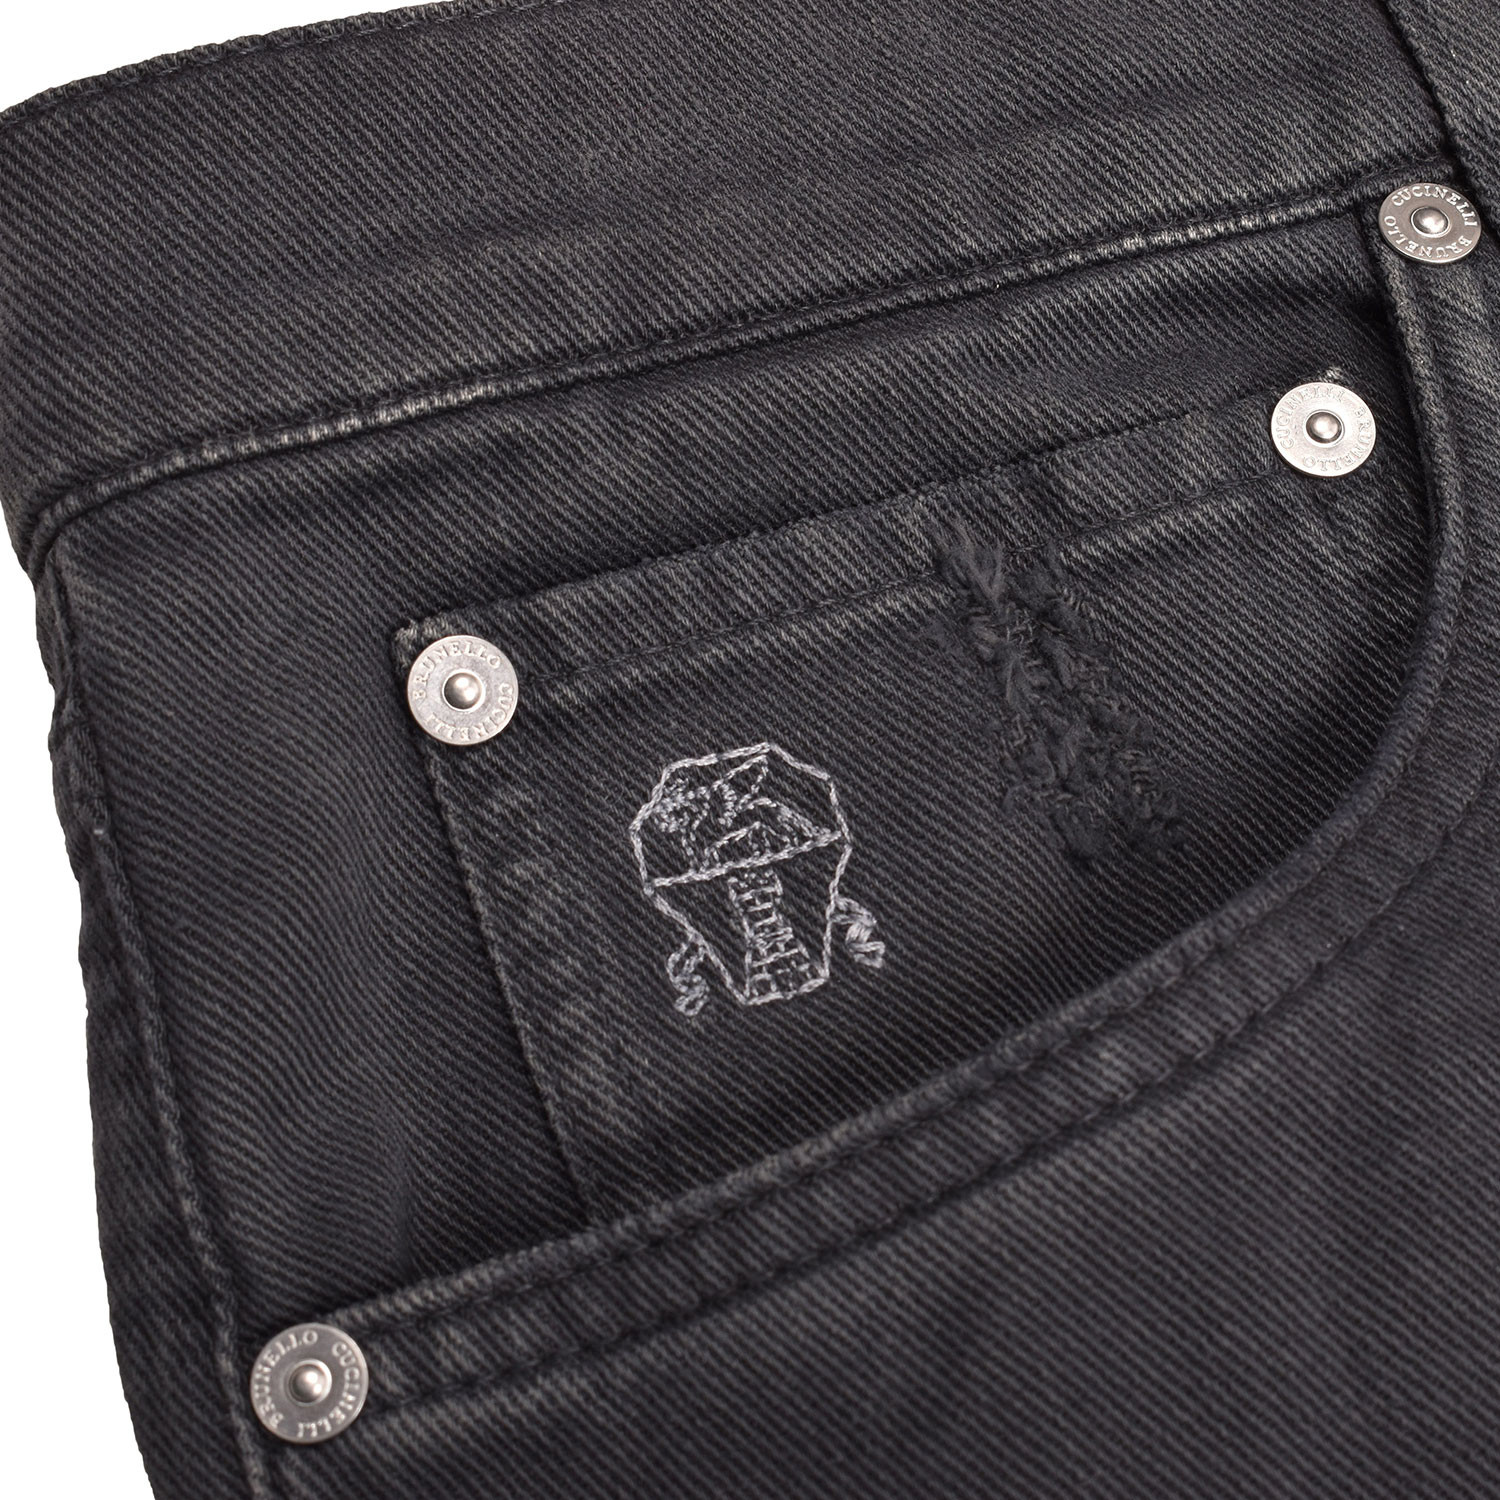 Distressed 5-Pocket Denim Jeans // Black (34WX32L) - Designer Fashion ...